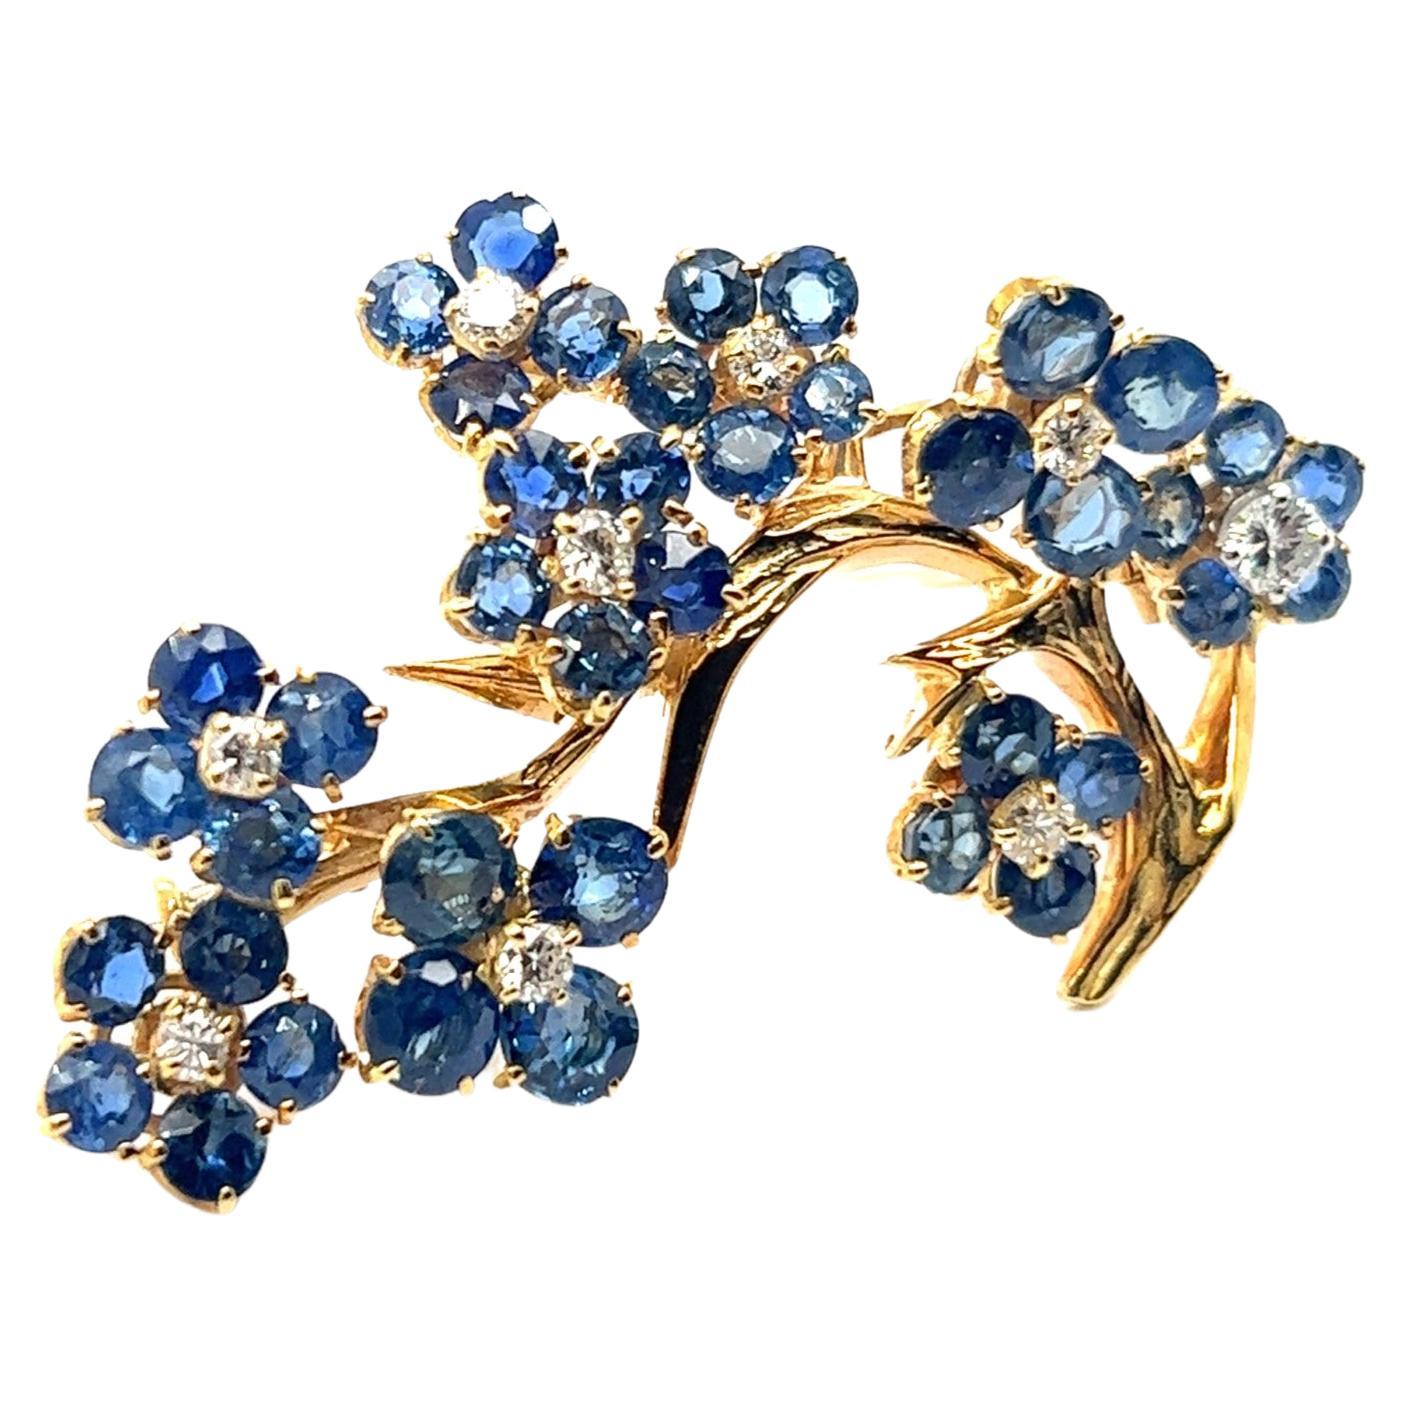 Flower Brooch with Sapphire & Diamonds in 18 Karat Yellow Gold by Gübelin